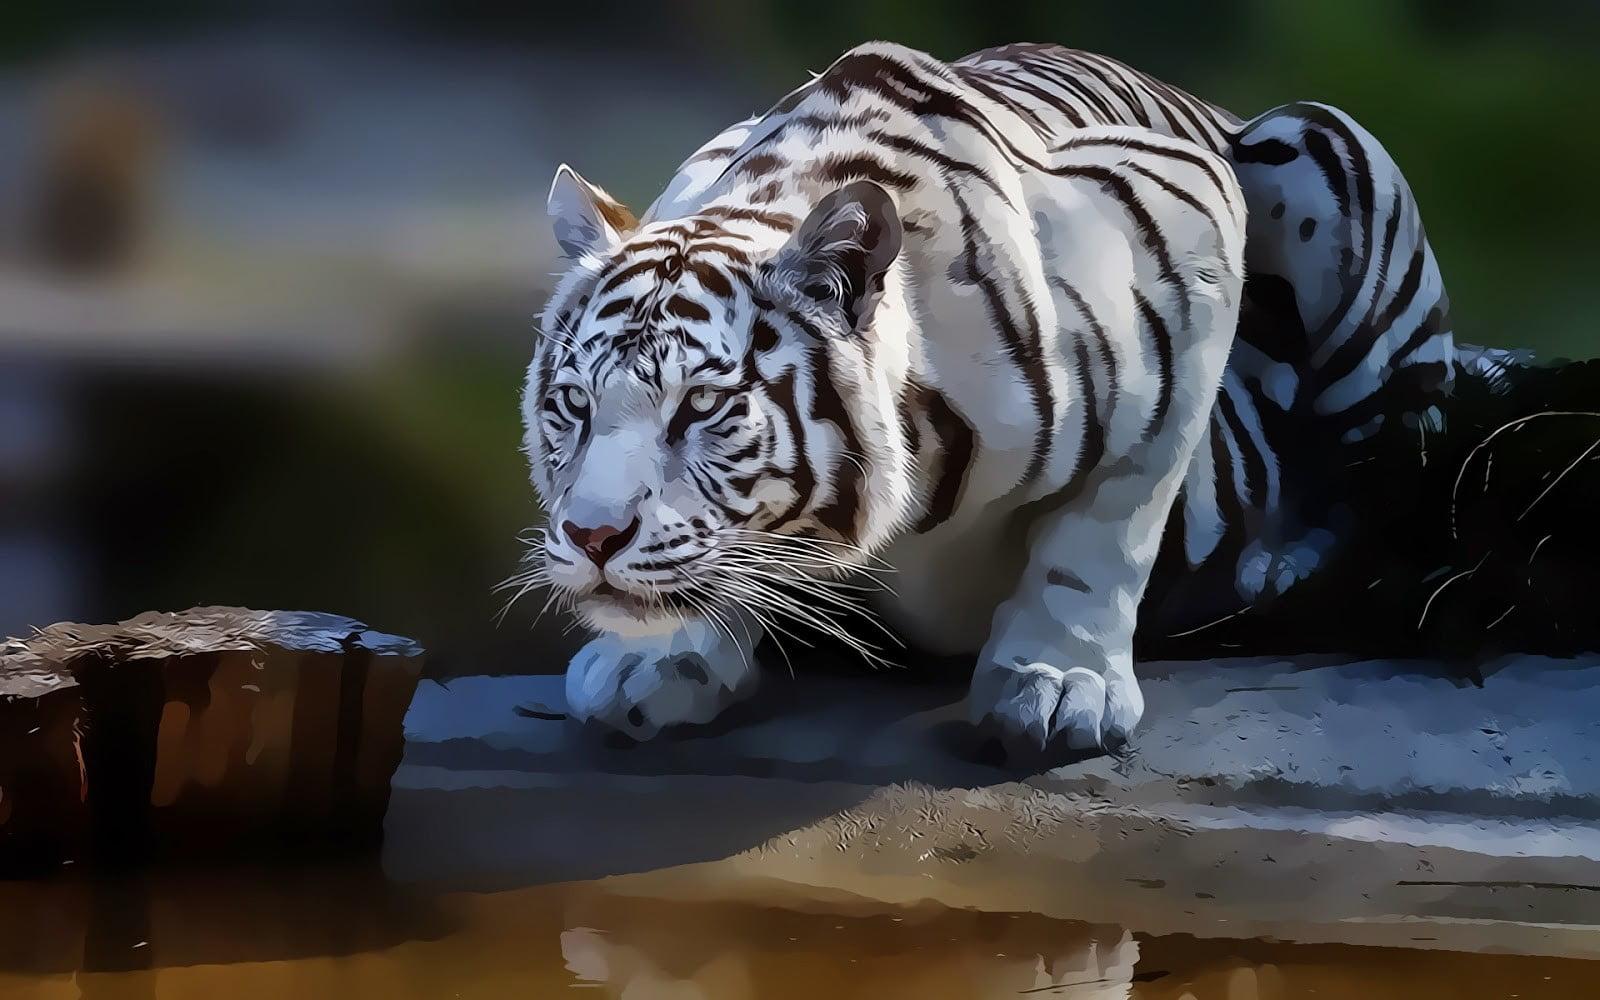 Black and white albino tiger, tiger, white tigers, animals